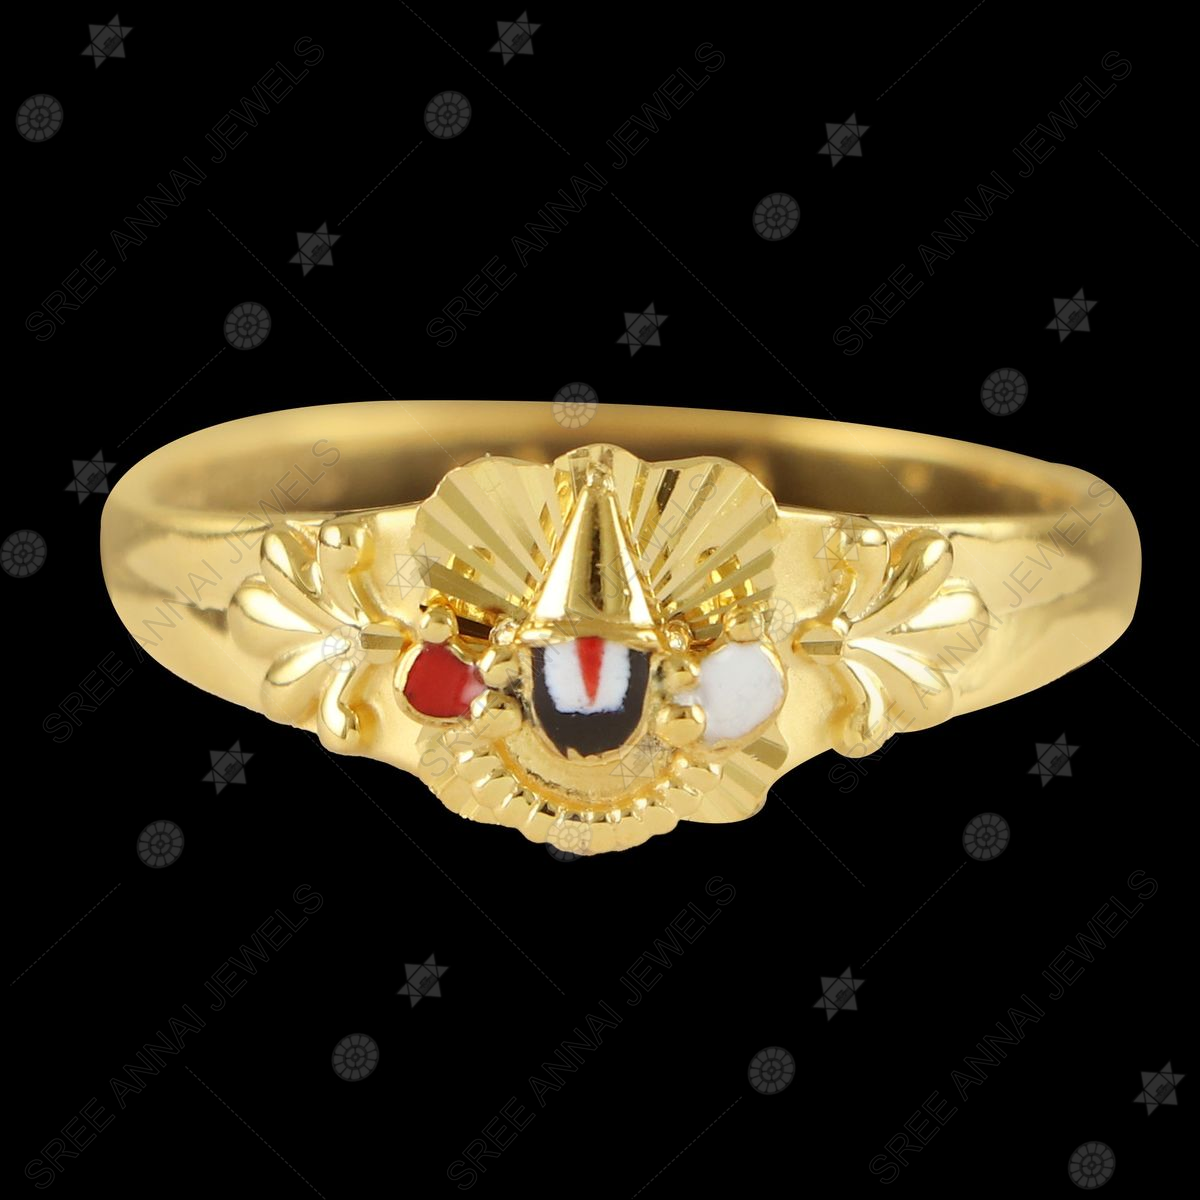 22K Gold 'Balaji' Ring For Men With Cz & Color Stones - 235-GR7233 in 6.200  Grams